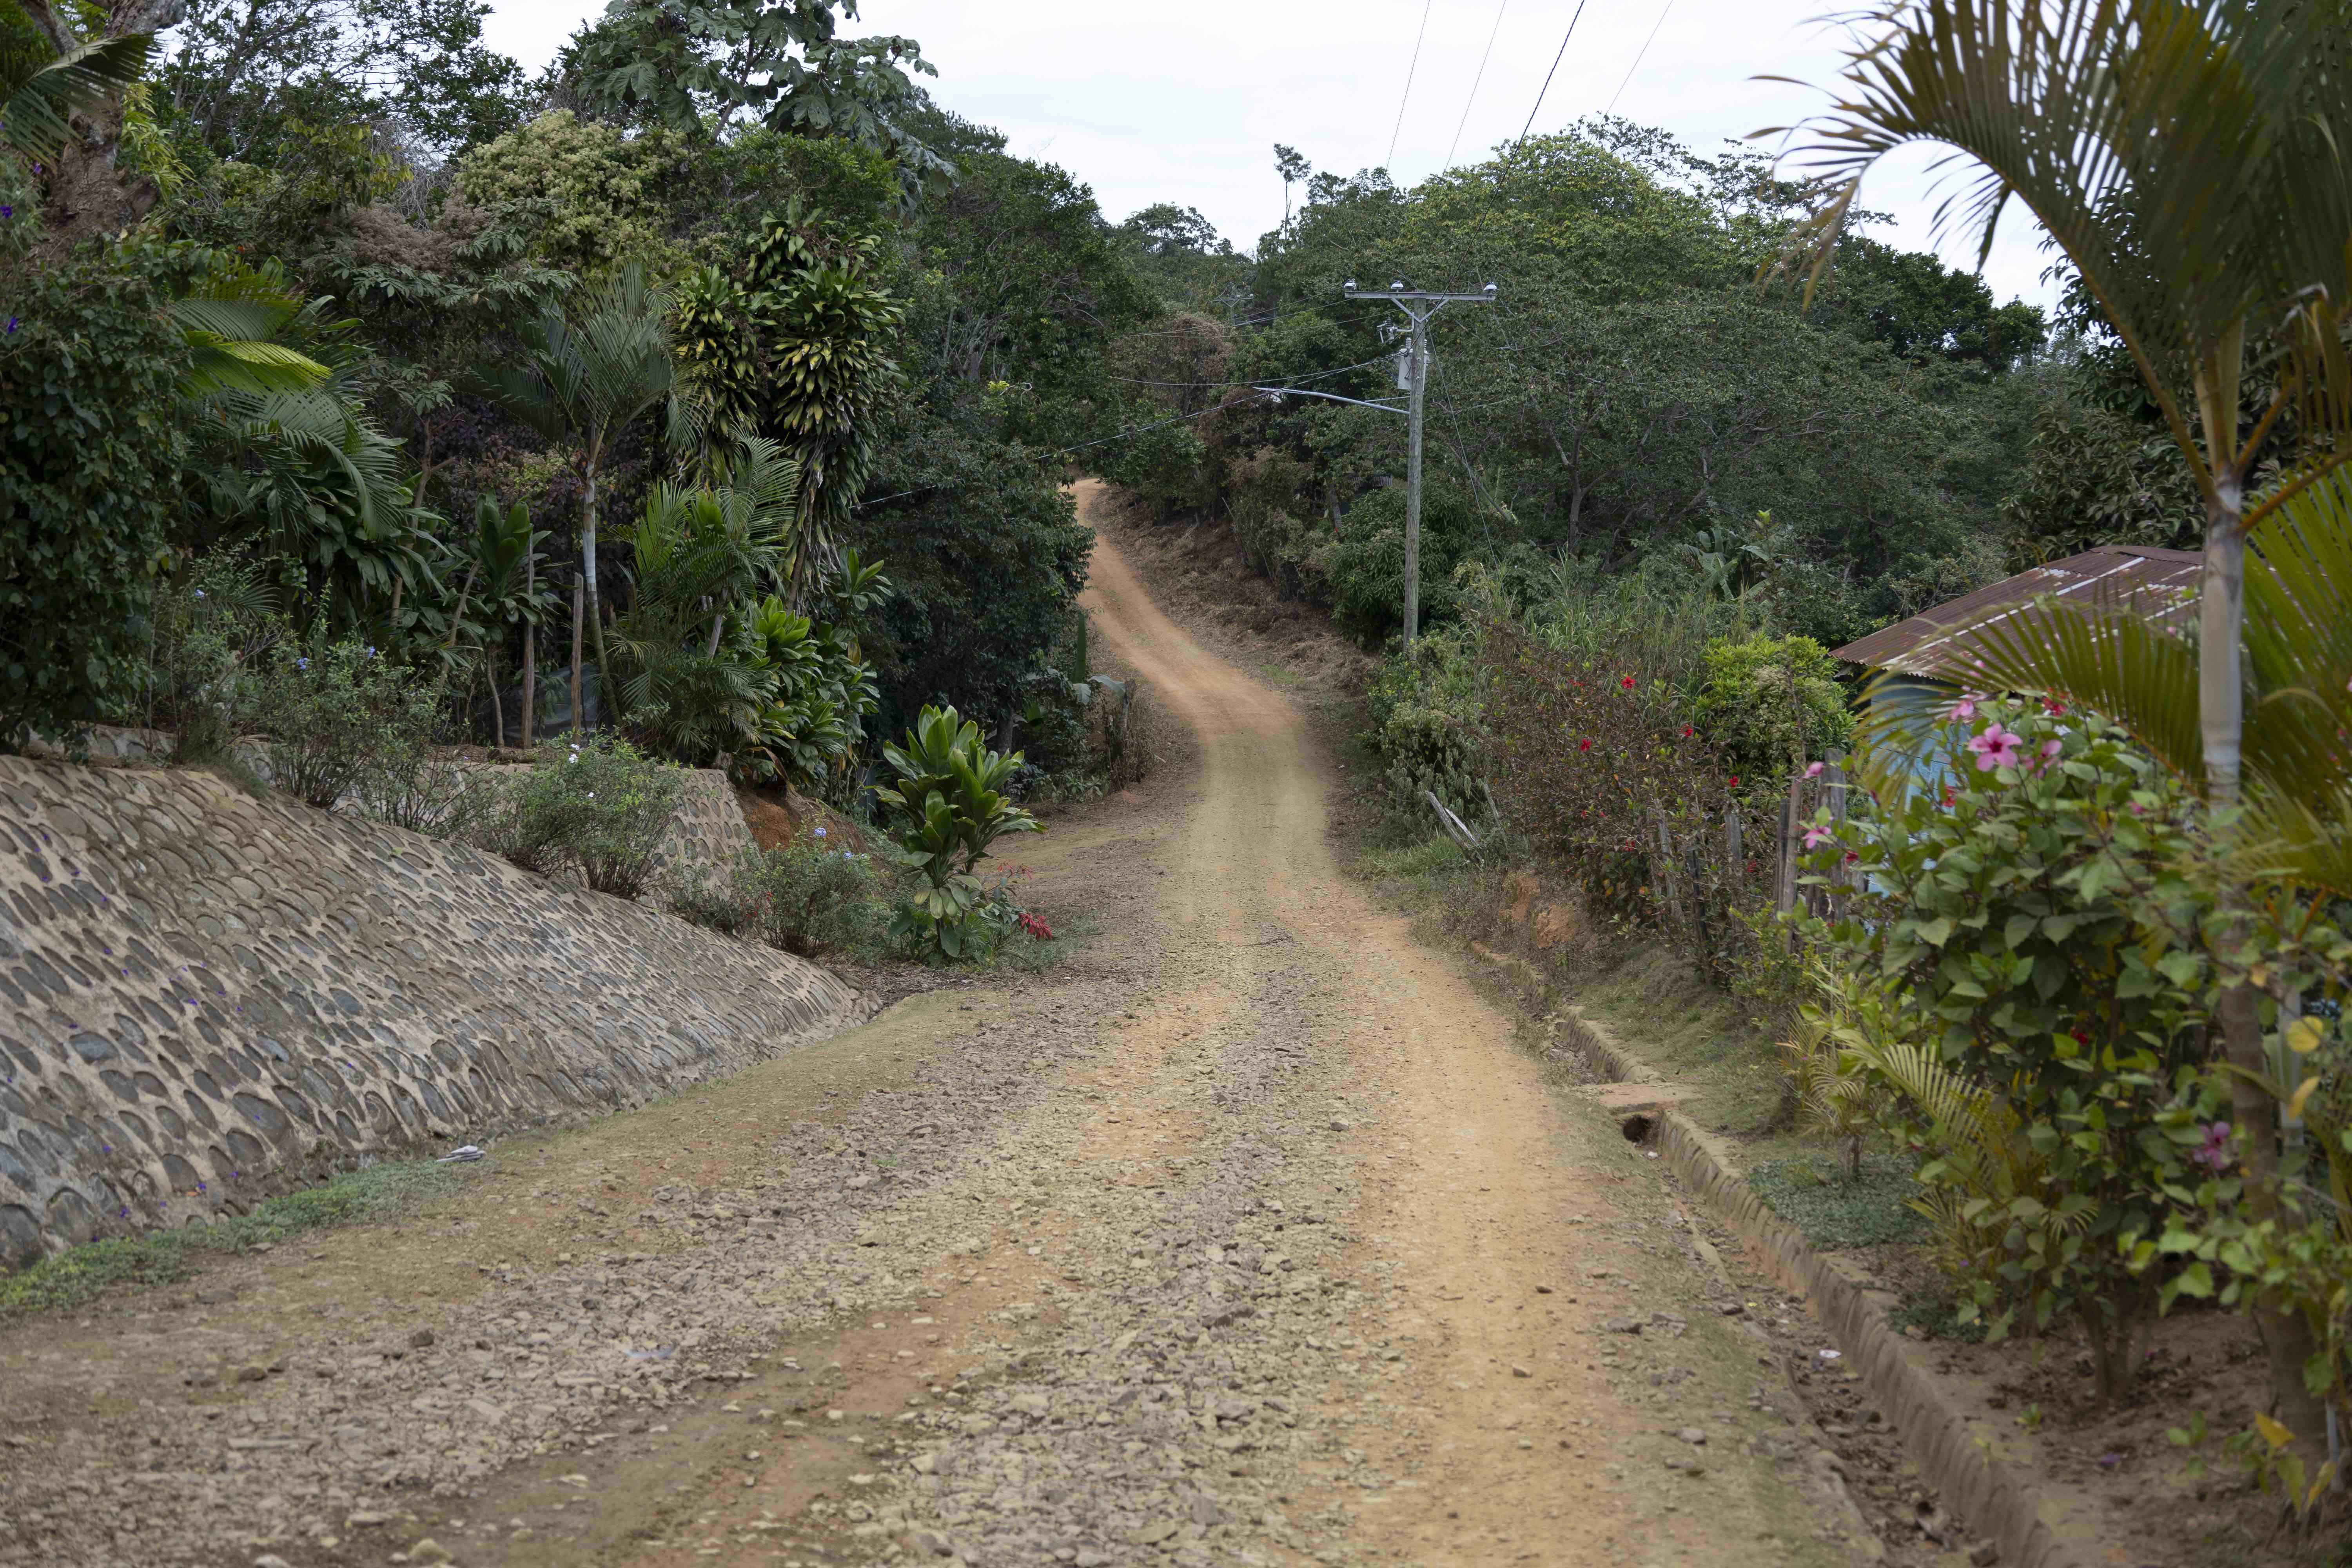 Camino de la vía de acceso hacia El Palero, donde se requieren vehículos todoterreno para llegar hasta la minihidroeléctrica.